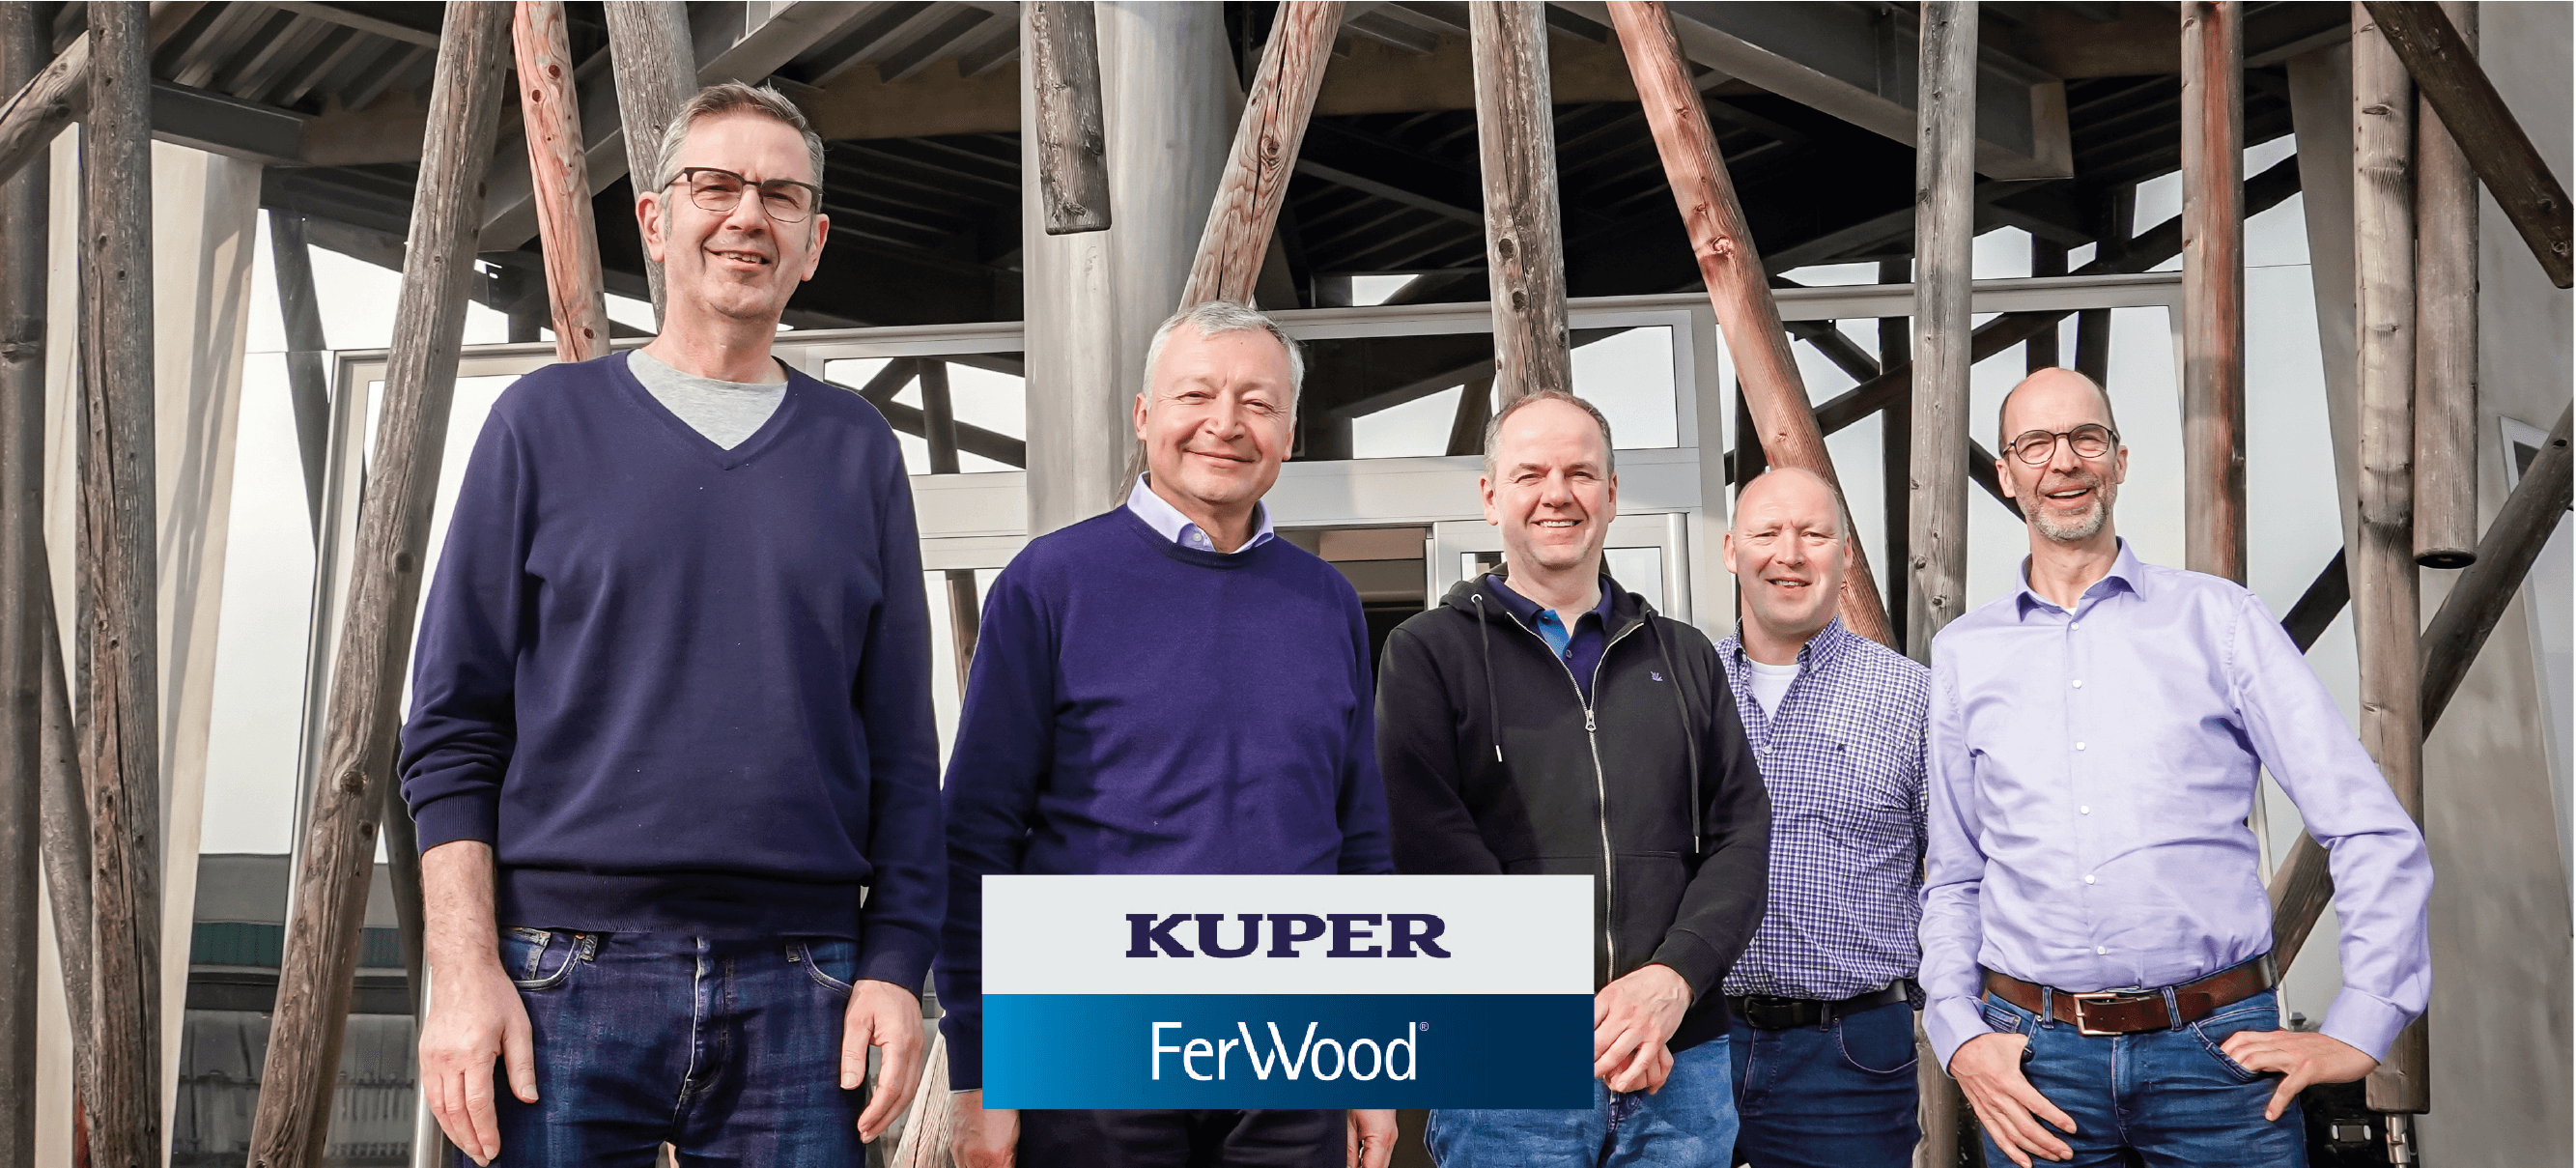 Heinrich Kuper GmbH wird weiterer Partner der Ferwood-Gruppe